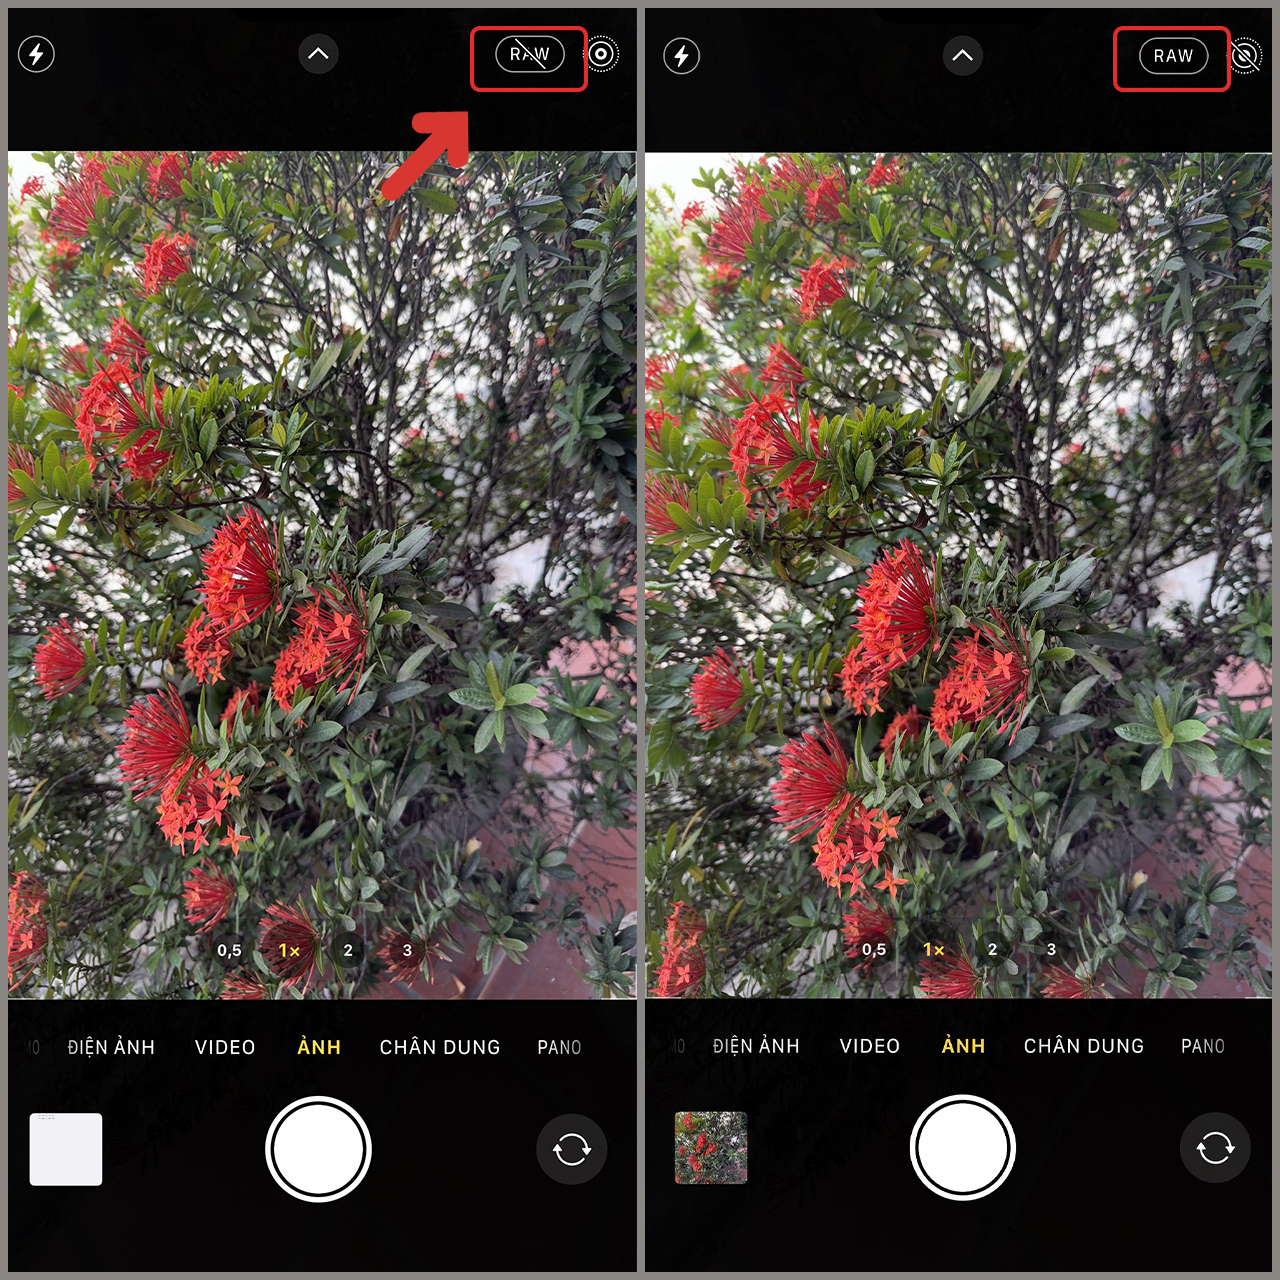 Những kỹ thuật chụp ảnh đẹp trên iPhone 14 mà mọi người nên biết và áp dụng là gì?